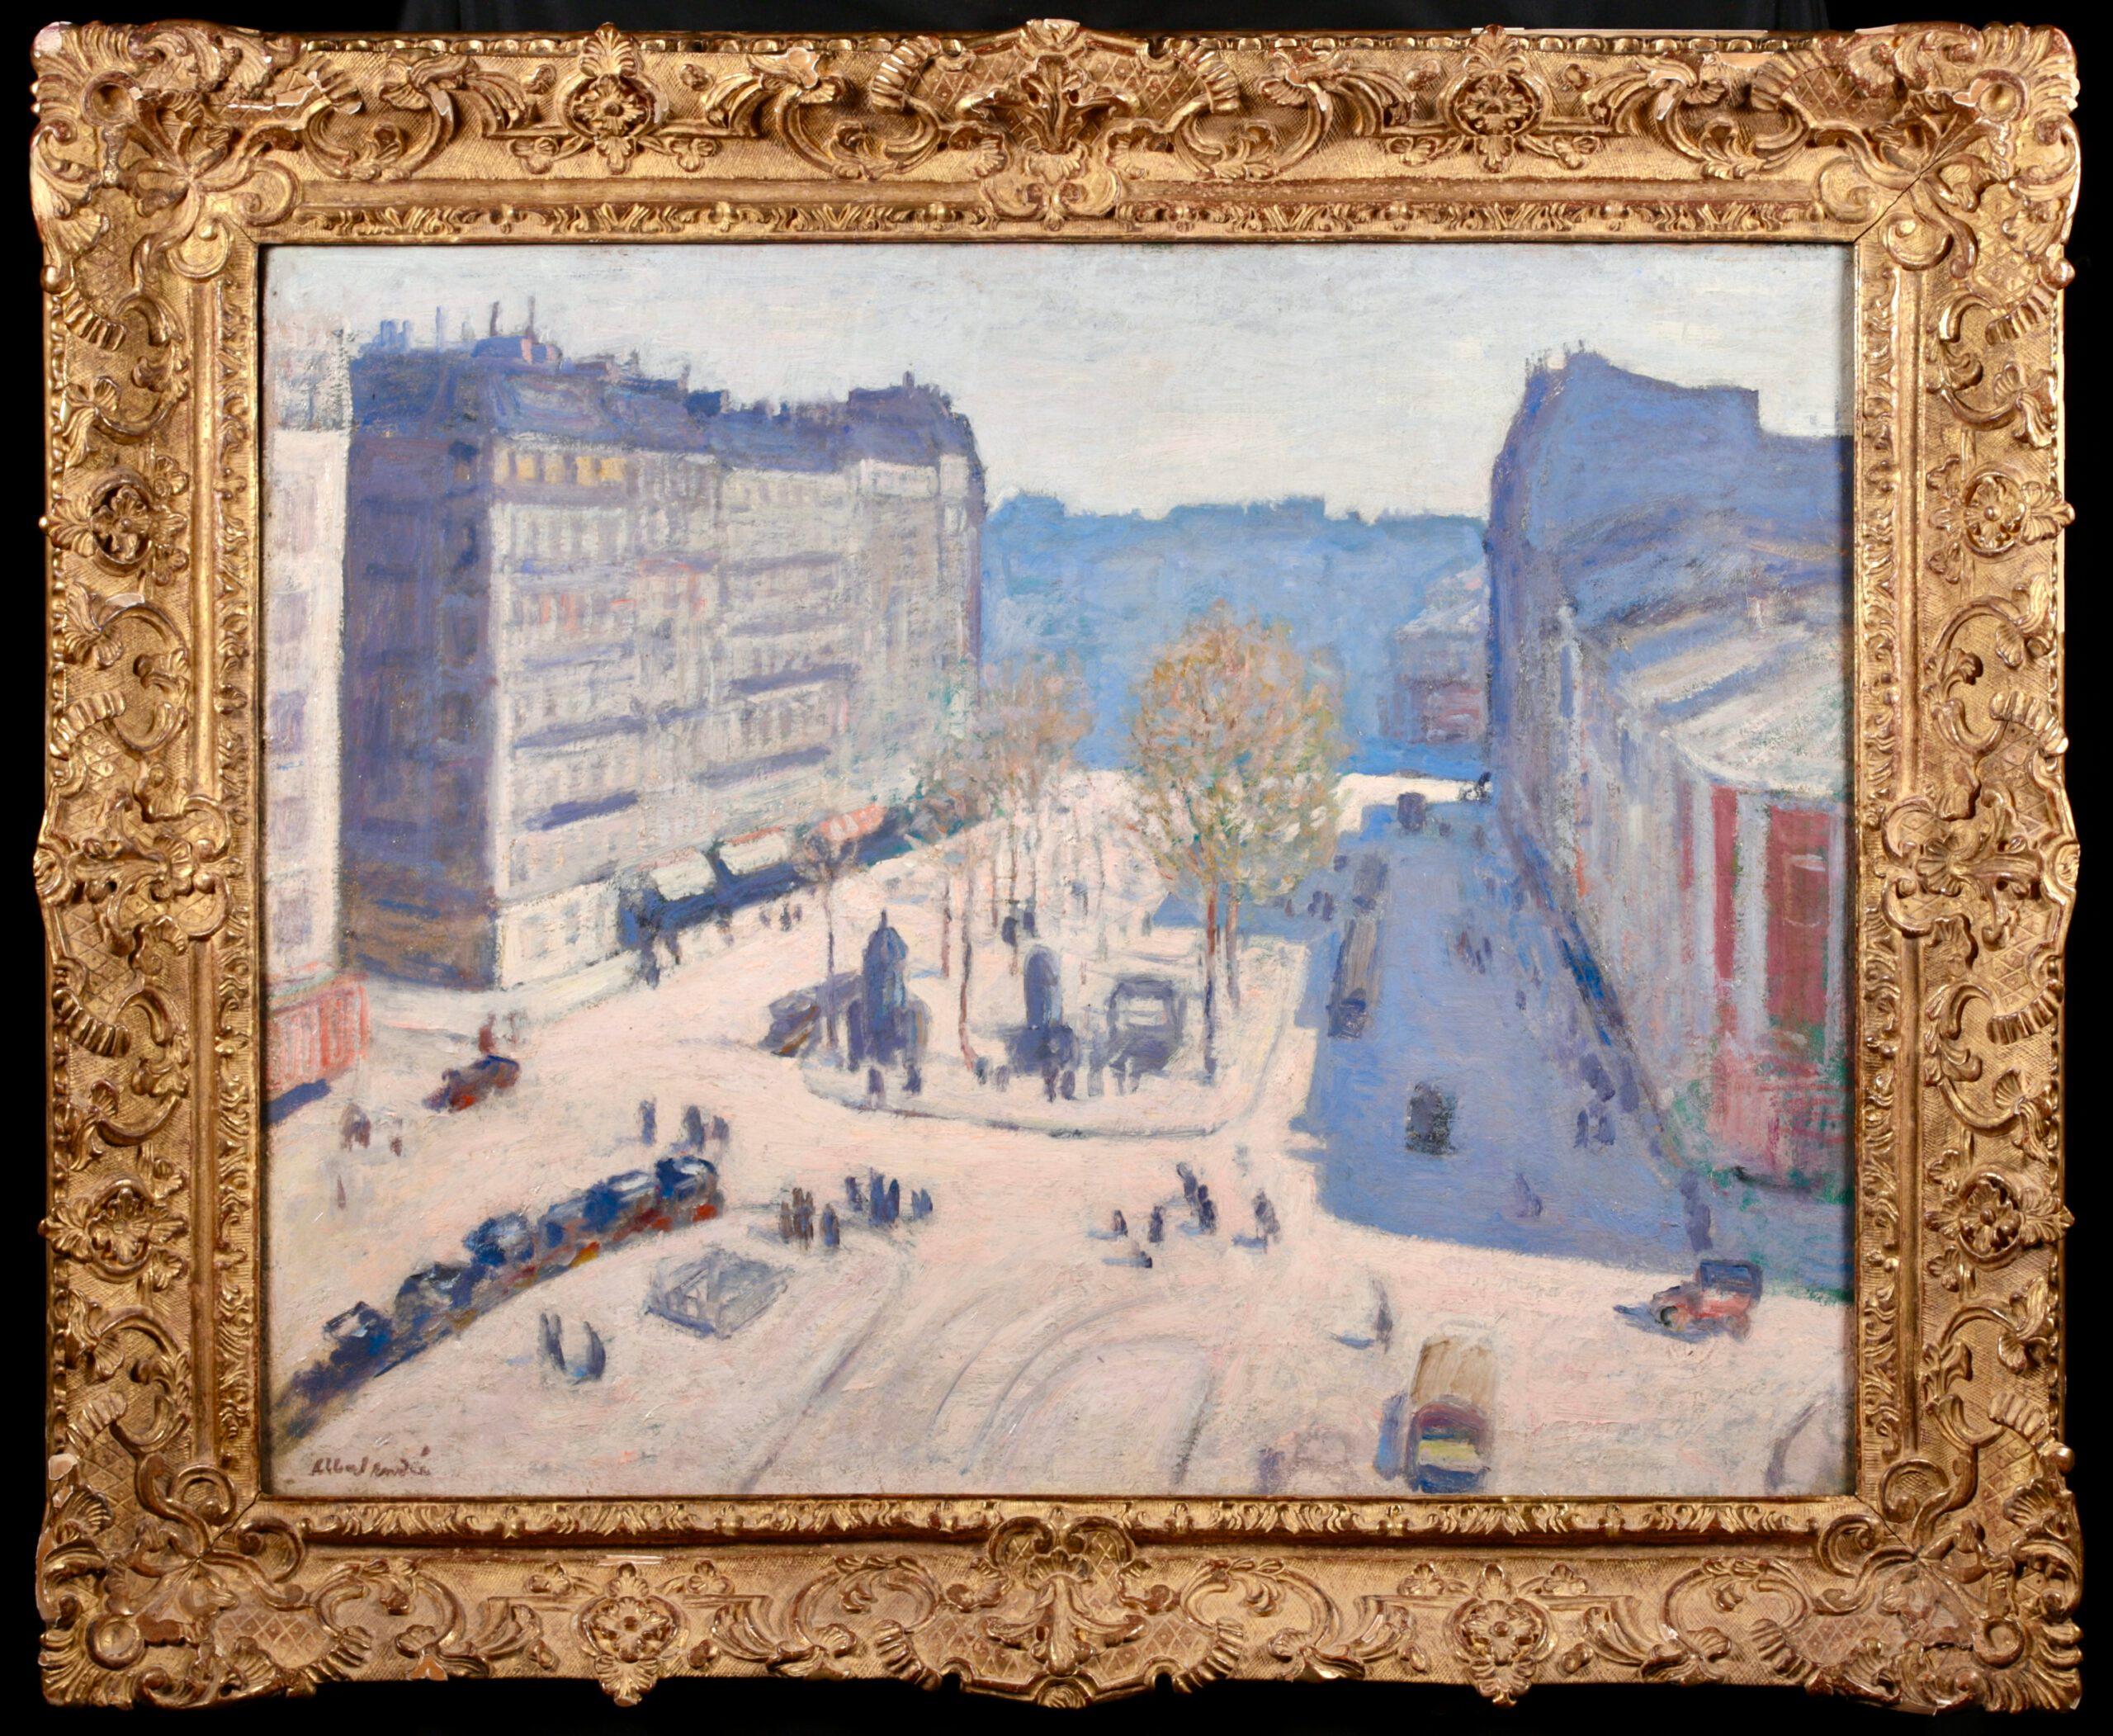 Huile sur toile signée et titrée "Figures in cityscape" circa 1920 par le peintre post impressionniste Albert Andre. Cette œuvre étonnante et de bonne taille représente une vue du boulevard de Clichy, une rue célèbre de la ville de Paris, en France,